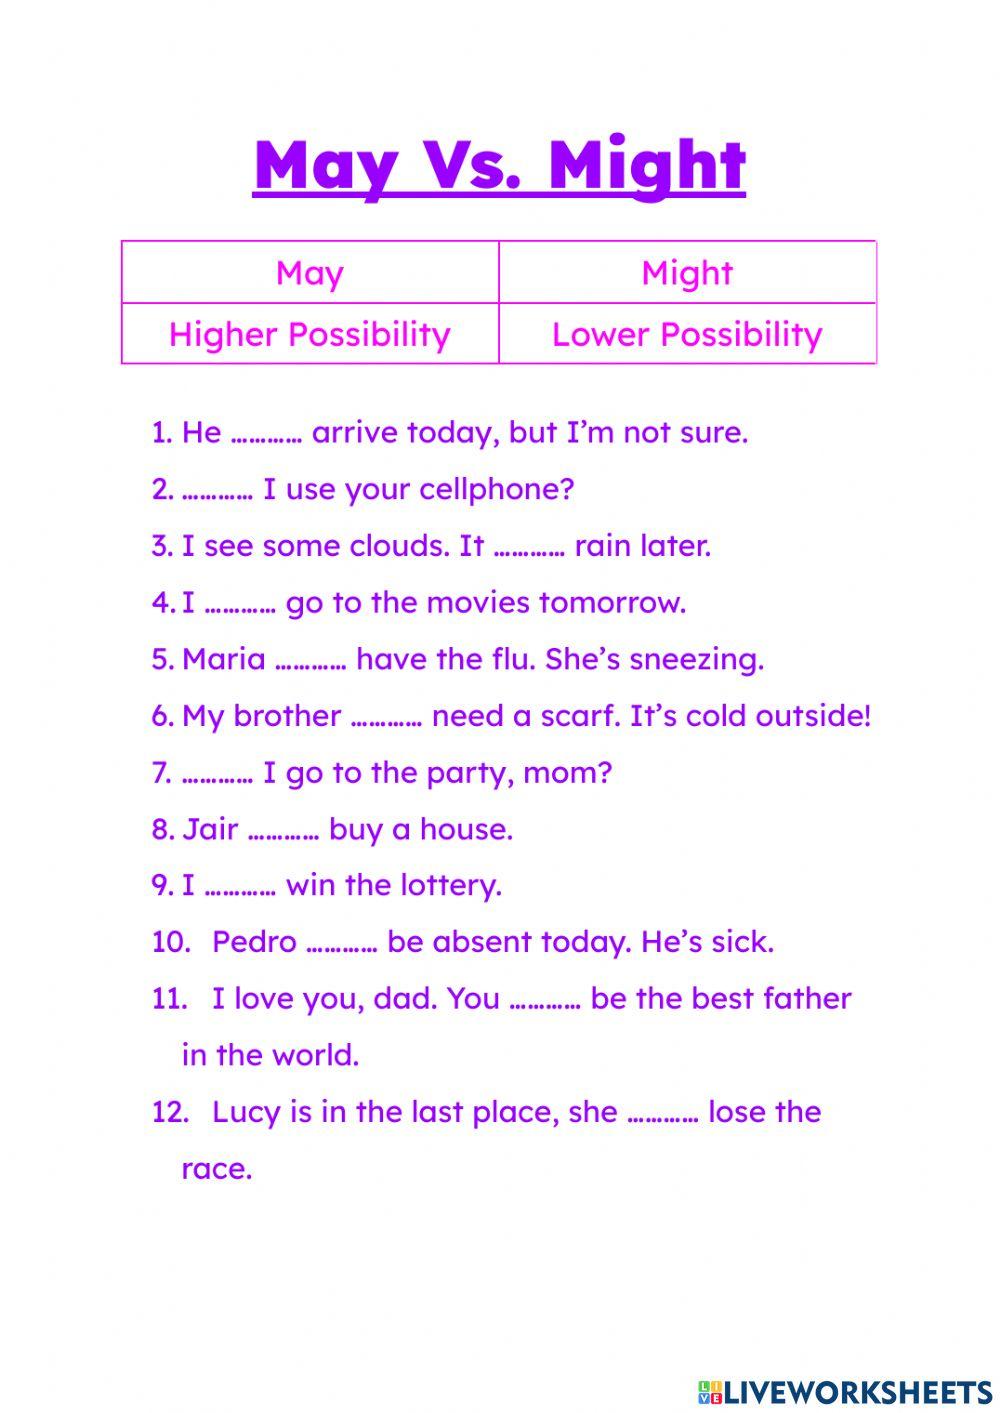 May vs might